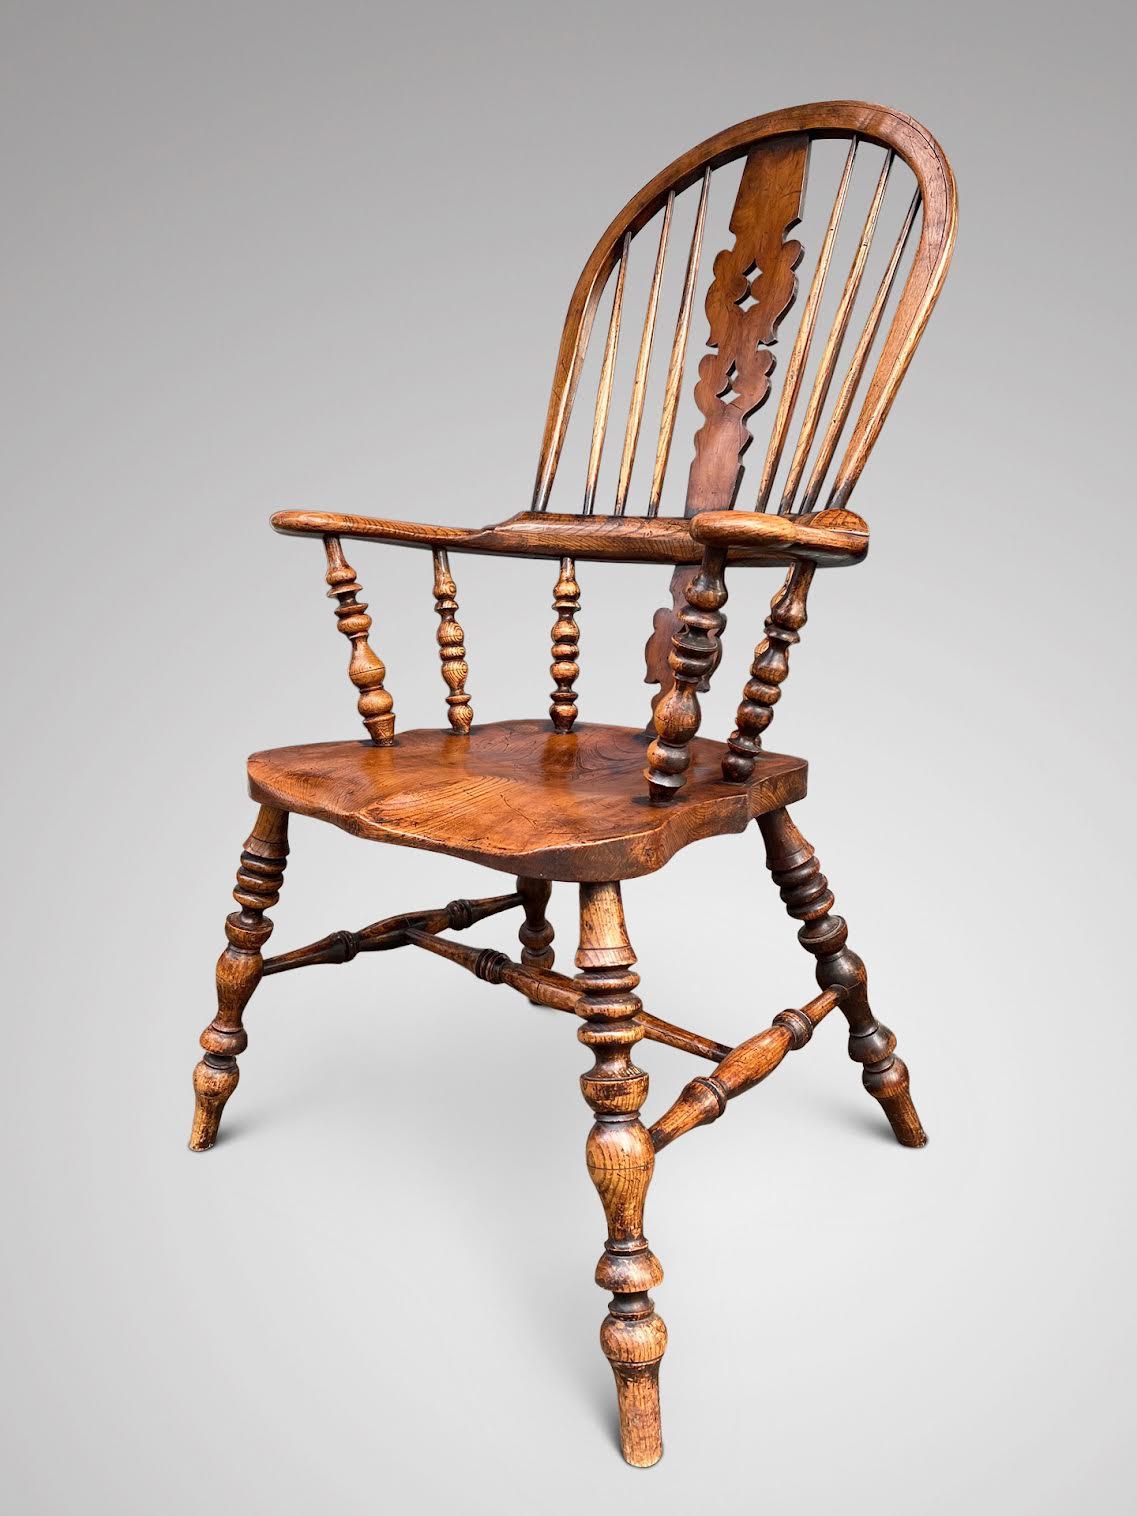 Eine schöne Ulme breiten Arm Windsor Stuhl, hervorragende Qualität 19. Jahrhundert, hohe Rückenlehne mit zentralen fretted dekorative Splat und drehte Spindeln, mit Ulme Sitz mit einem dreiteiligen Arm Bogen sitzen auf schön gedrehten Beinen durch